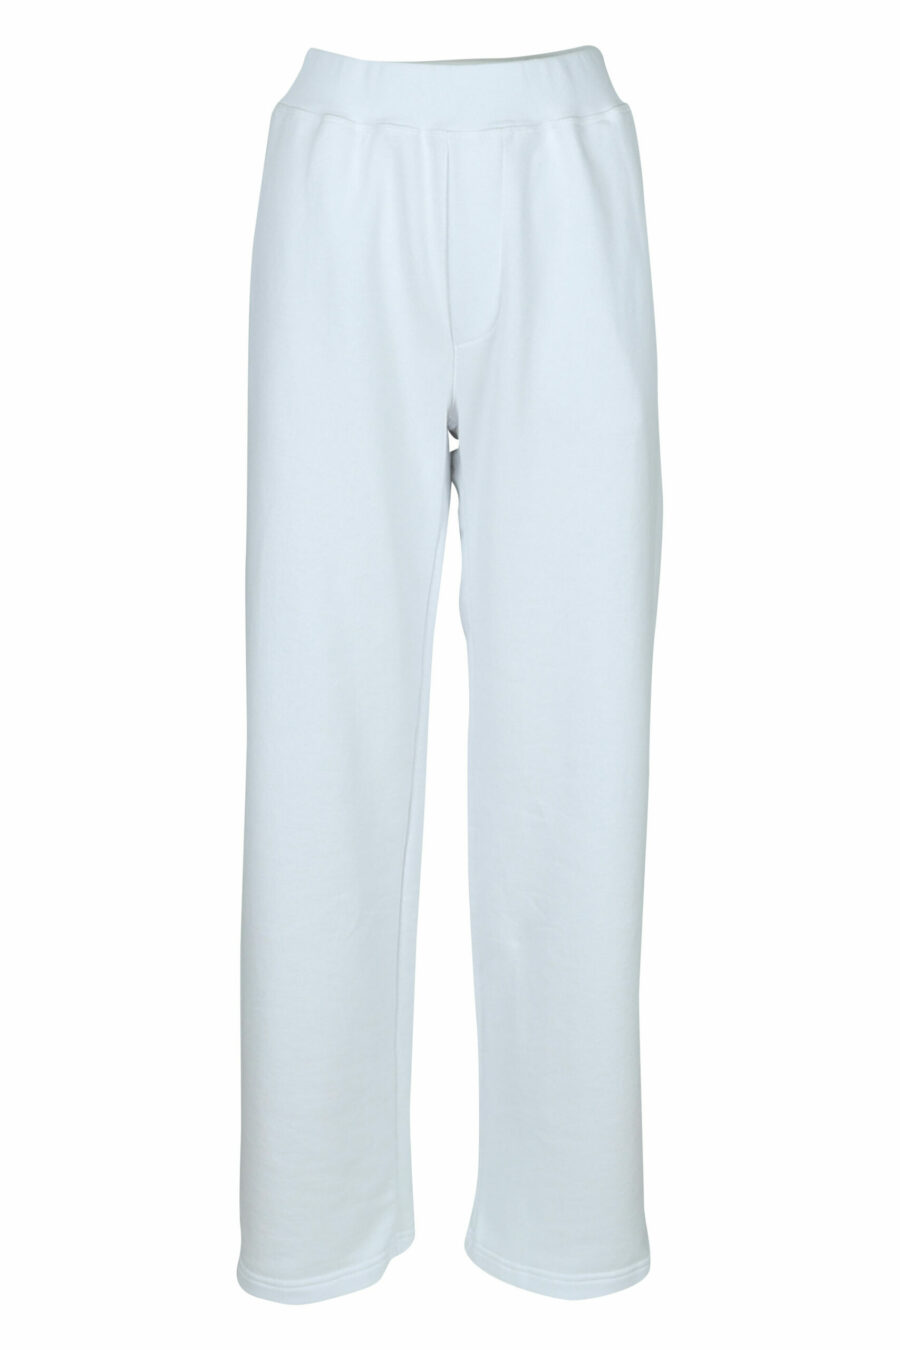 Pantalón blanco ancho con logo - 8054148457884 scaled